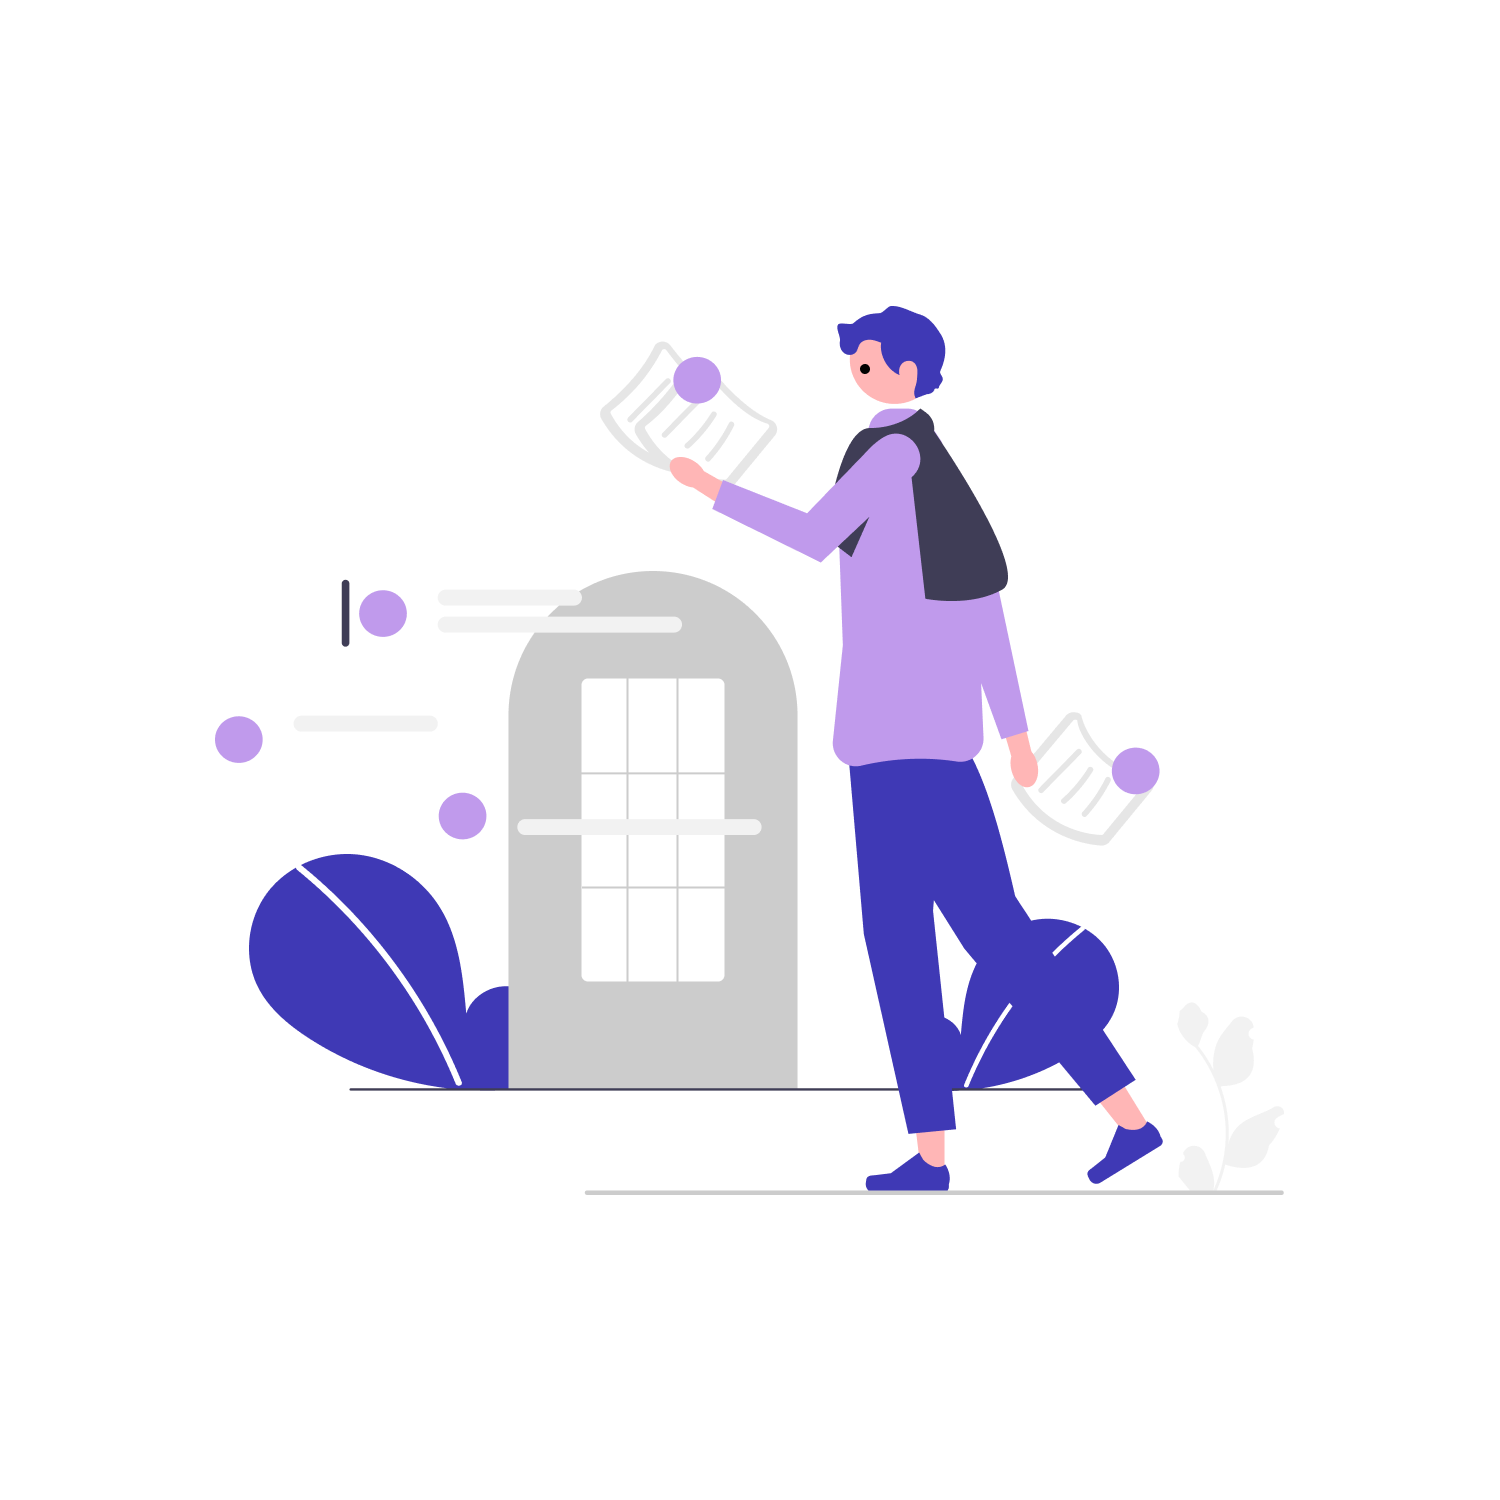 bag-baggage-illustration